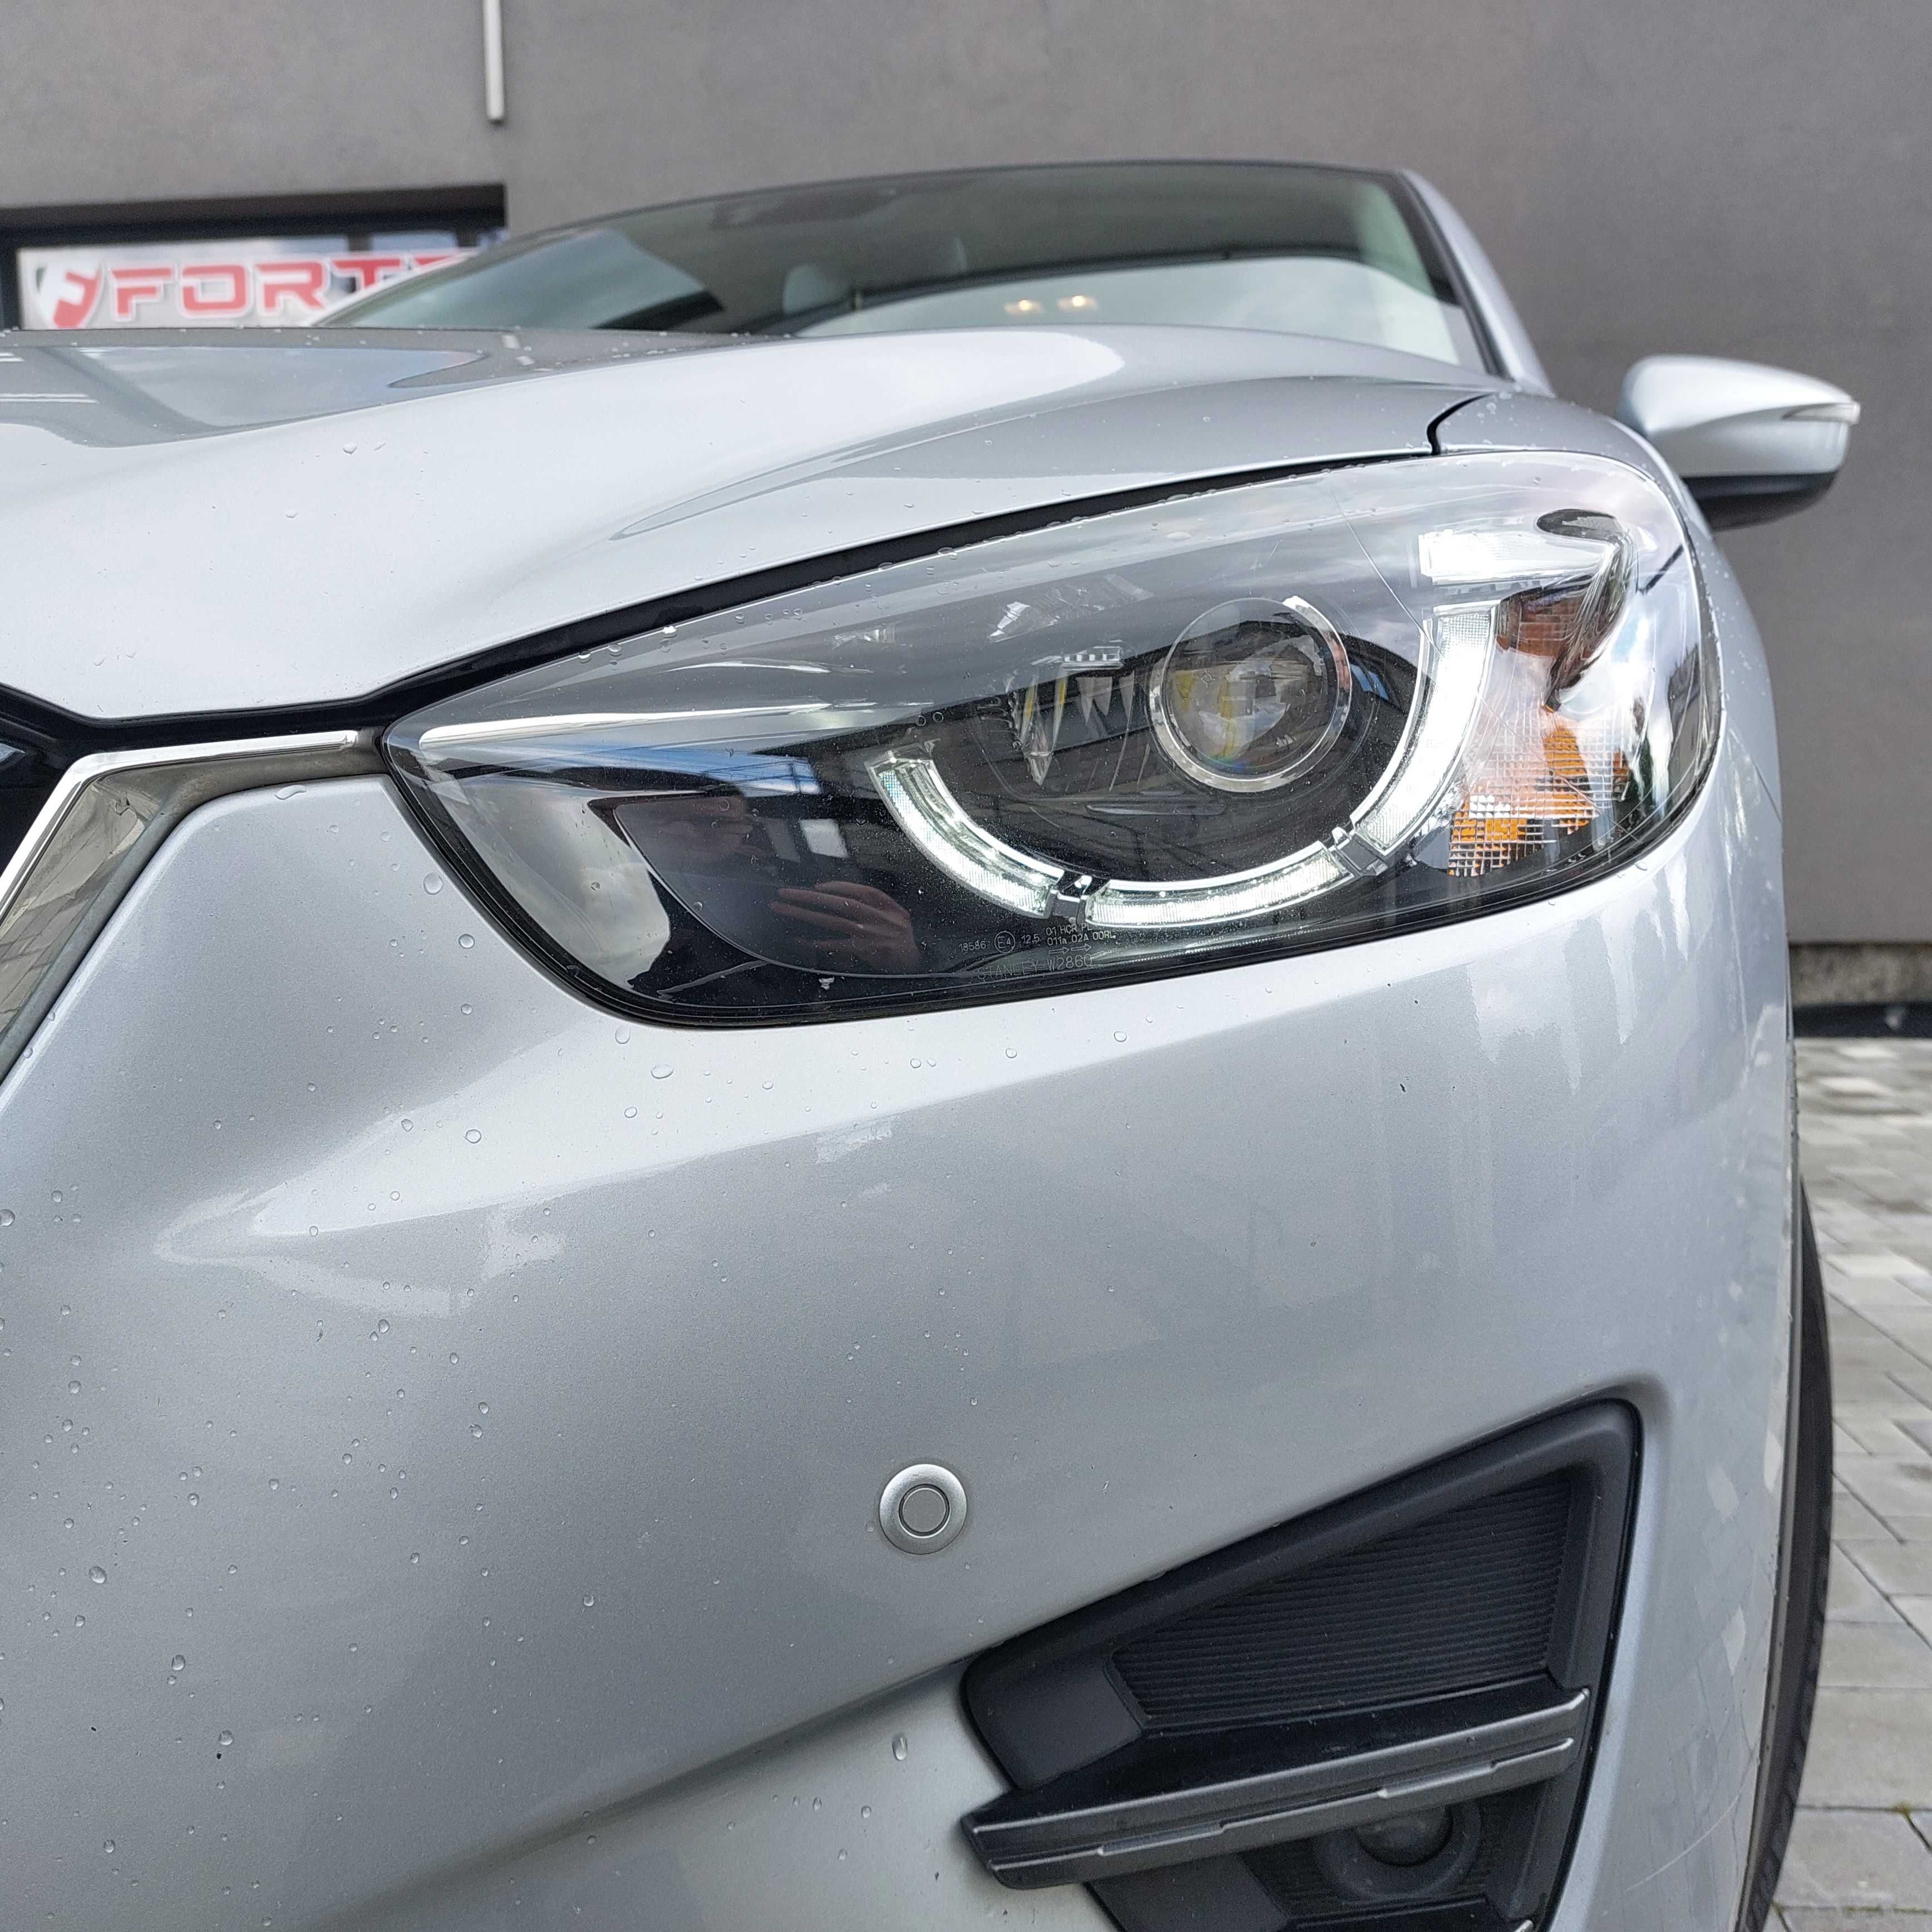 Автомобіль Mazda CX-5 2016 рік, 2,2 дизель, стан нового авто